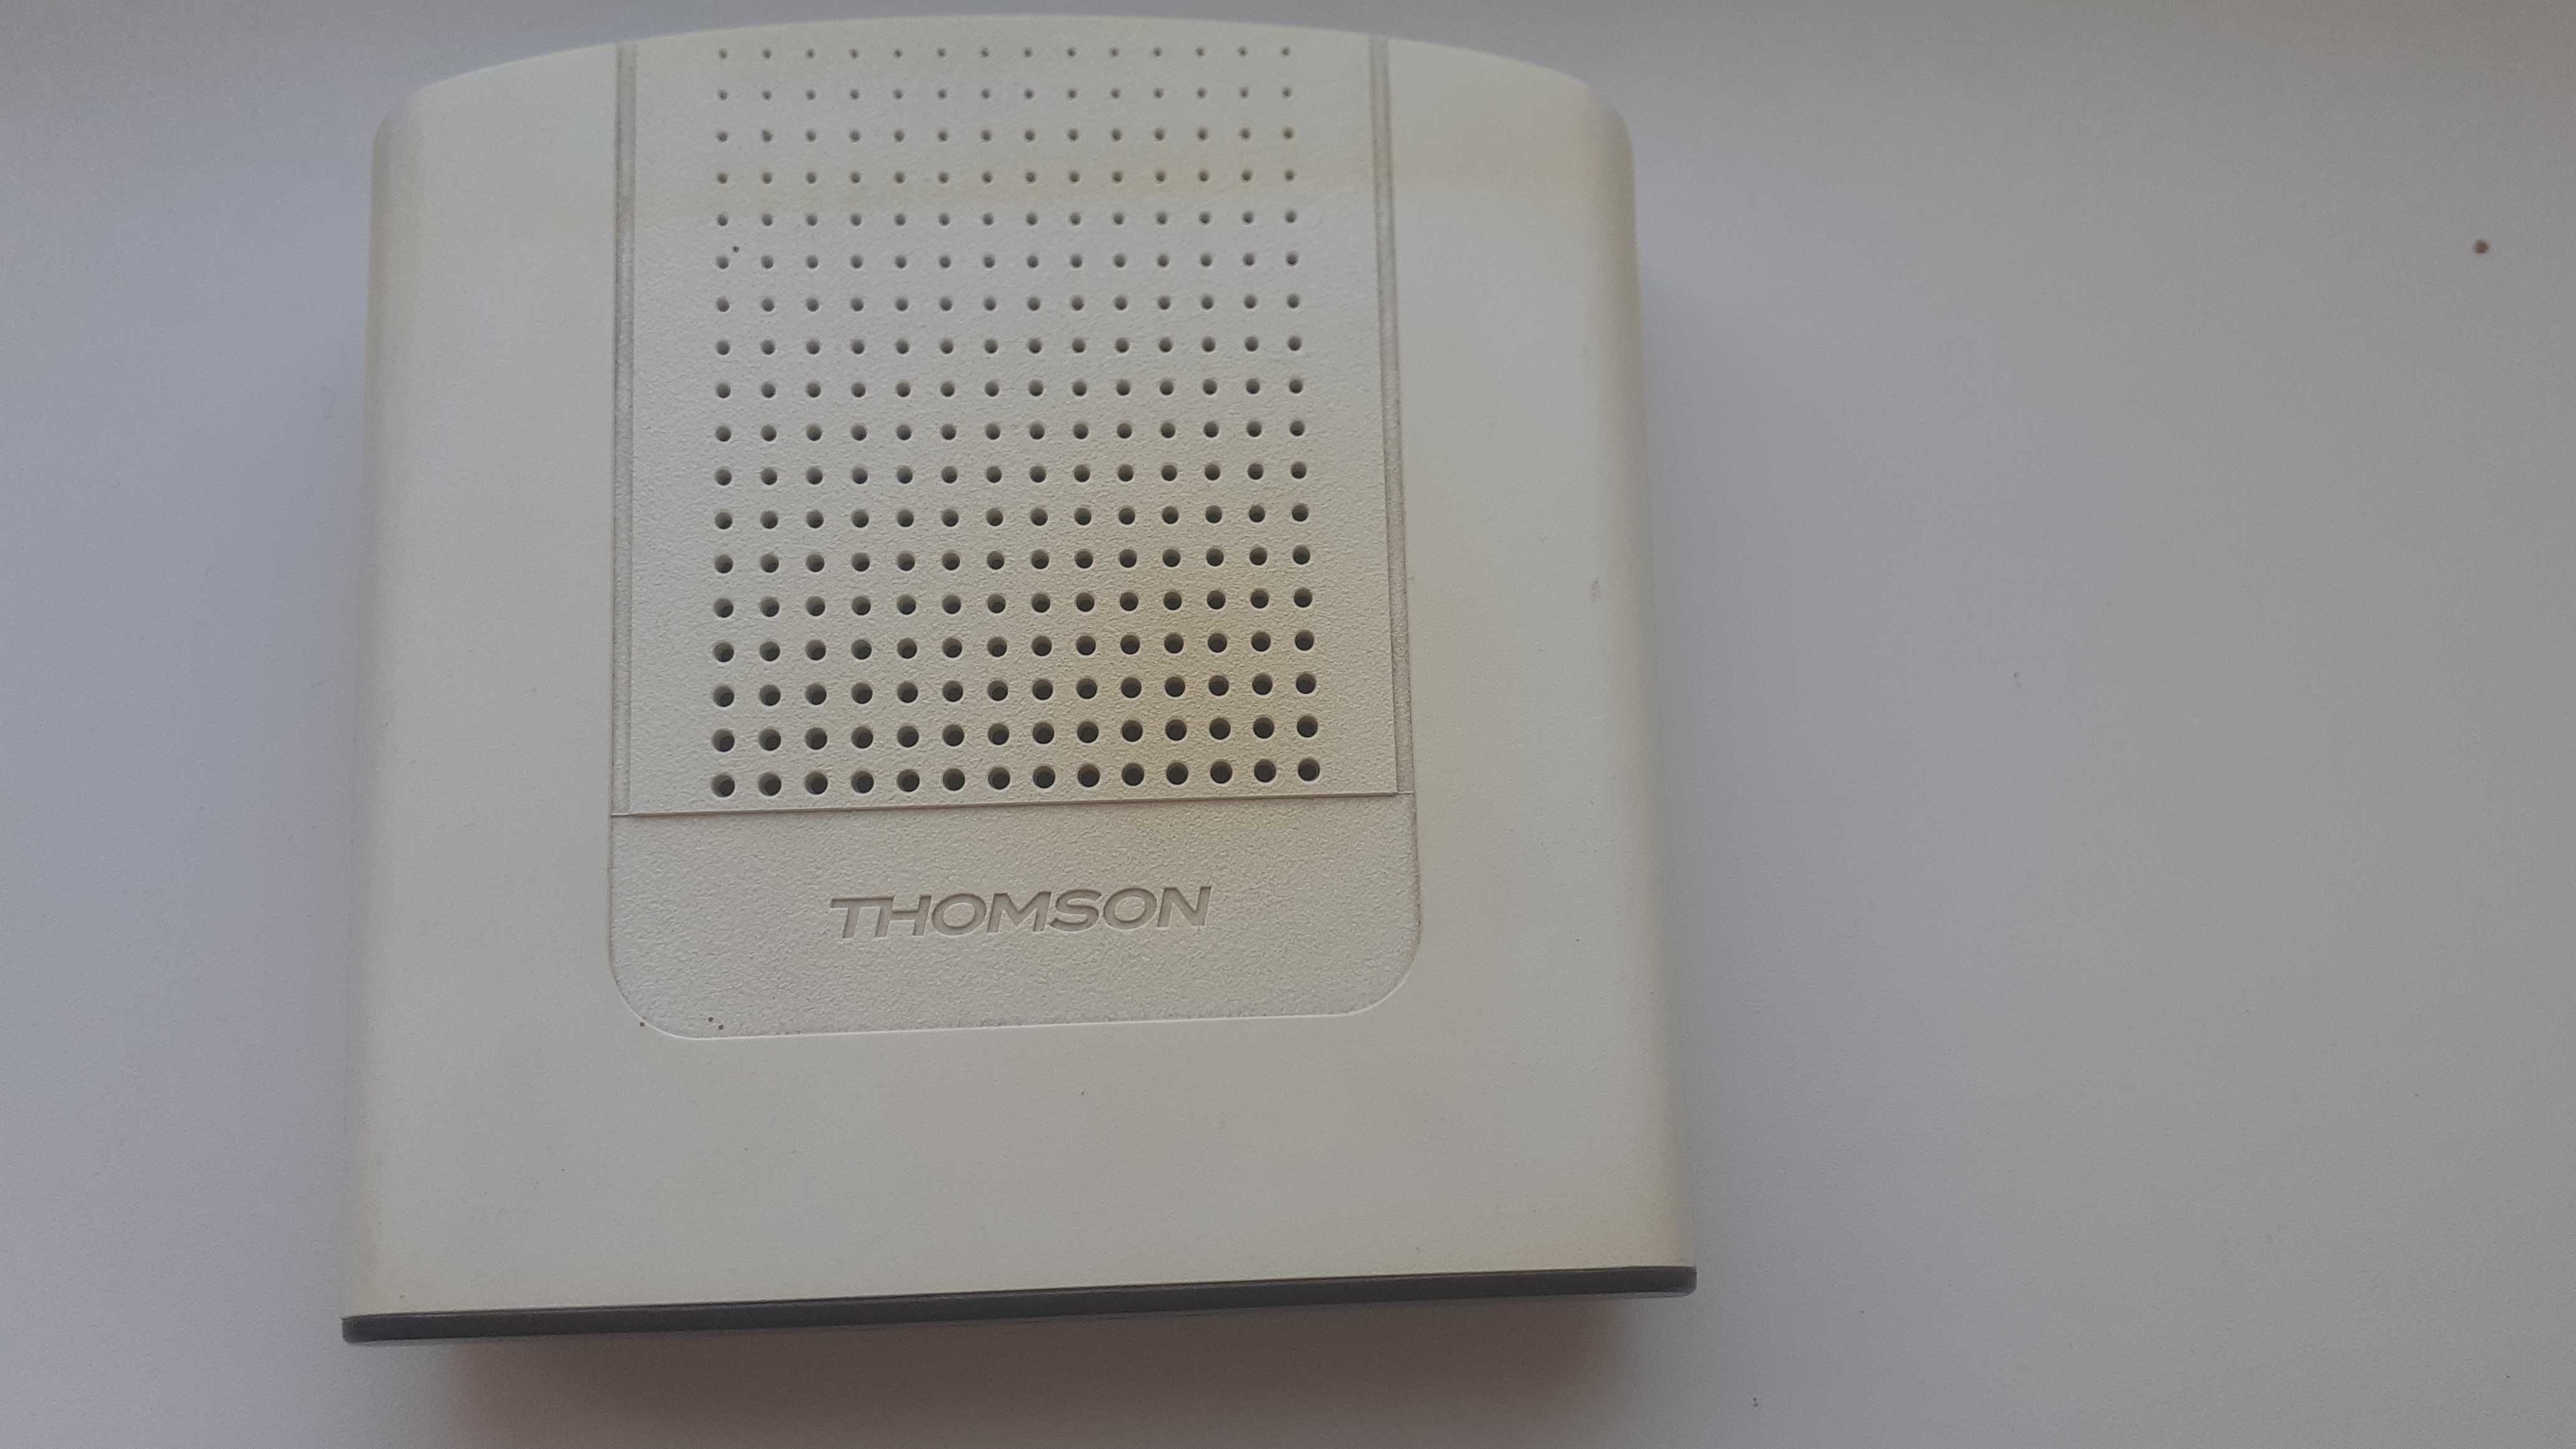 Продам модем THOMSON ТСМ-470 для кабельного телевидения.